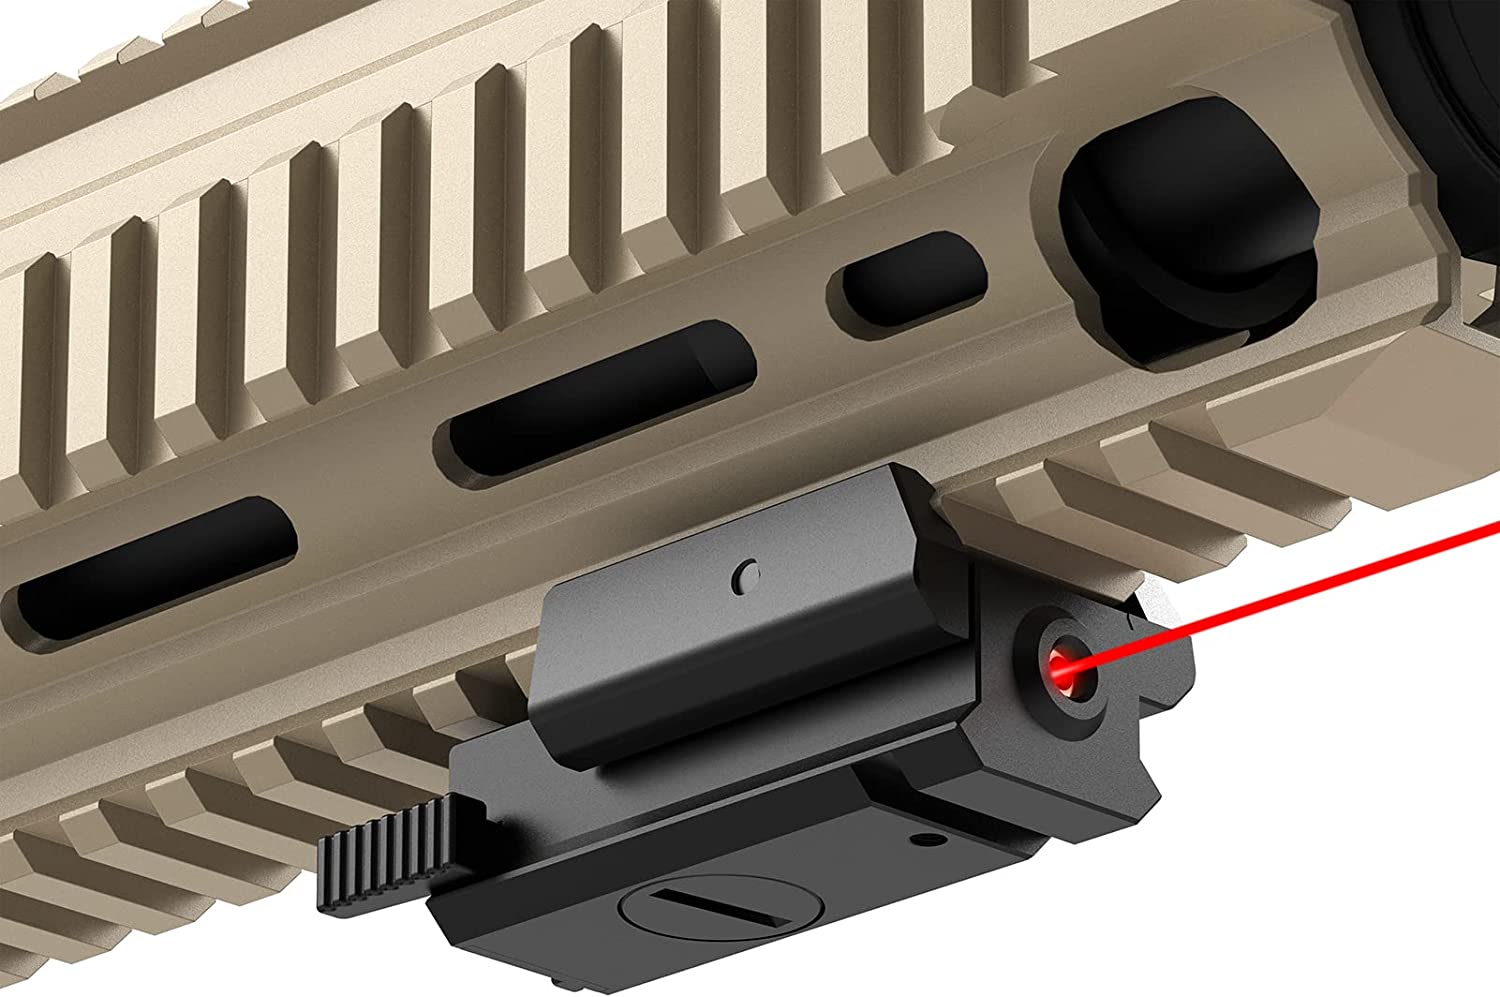 Twod Laser Sight Red Dot Gun Sight for Pistol Gun Tactical Rifle Handgun with 20mm Picatinny Mount